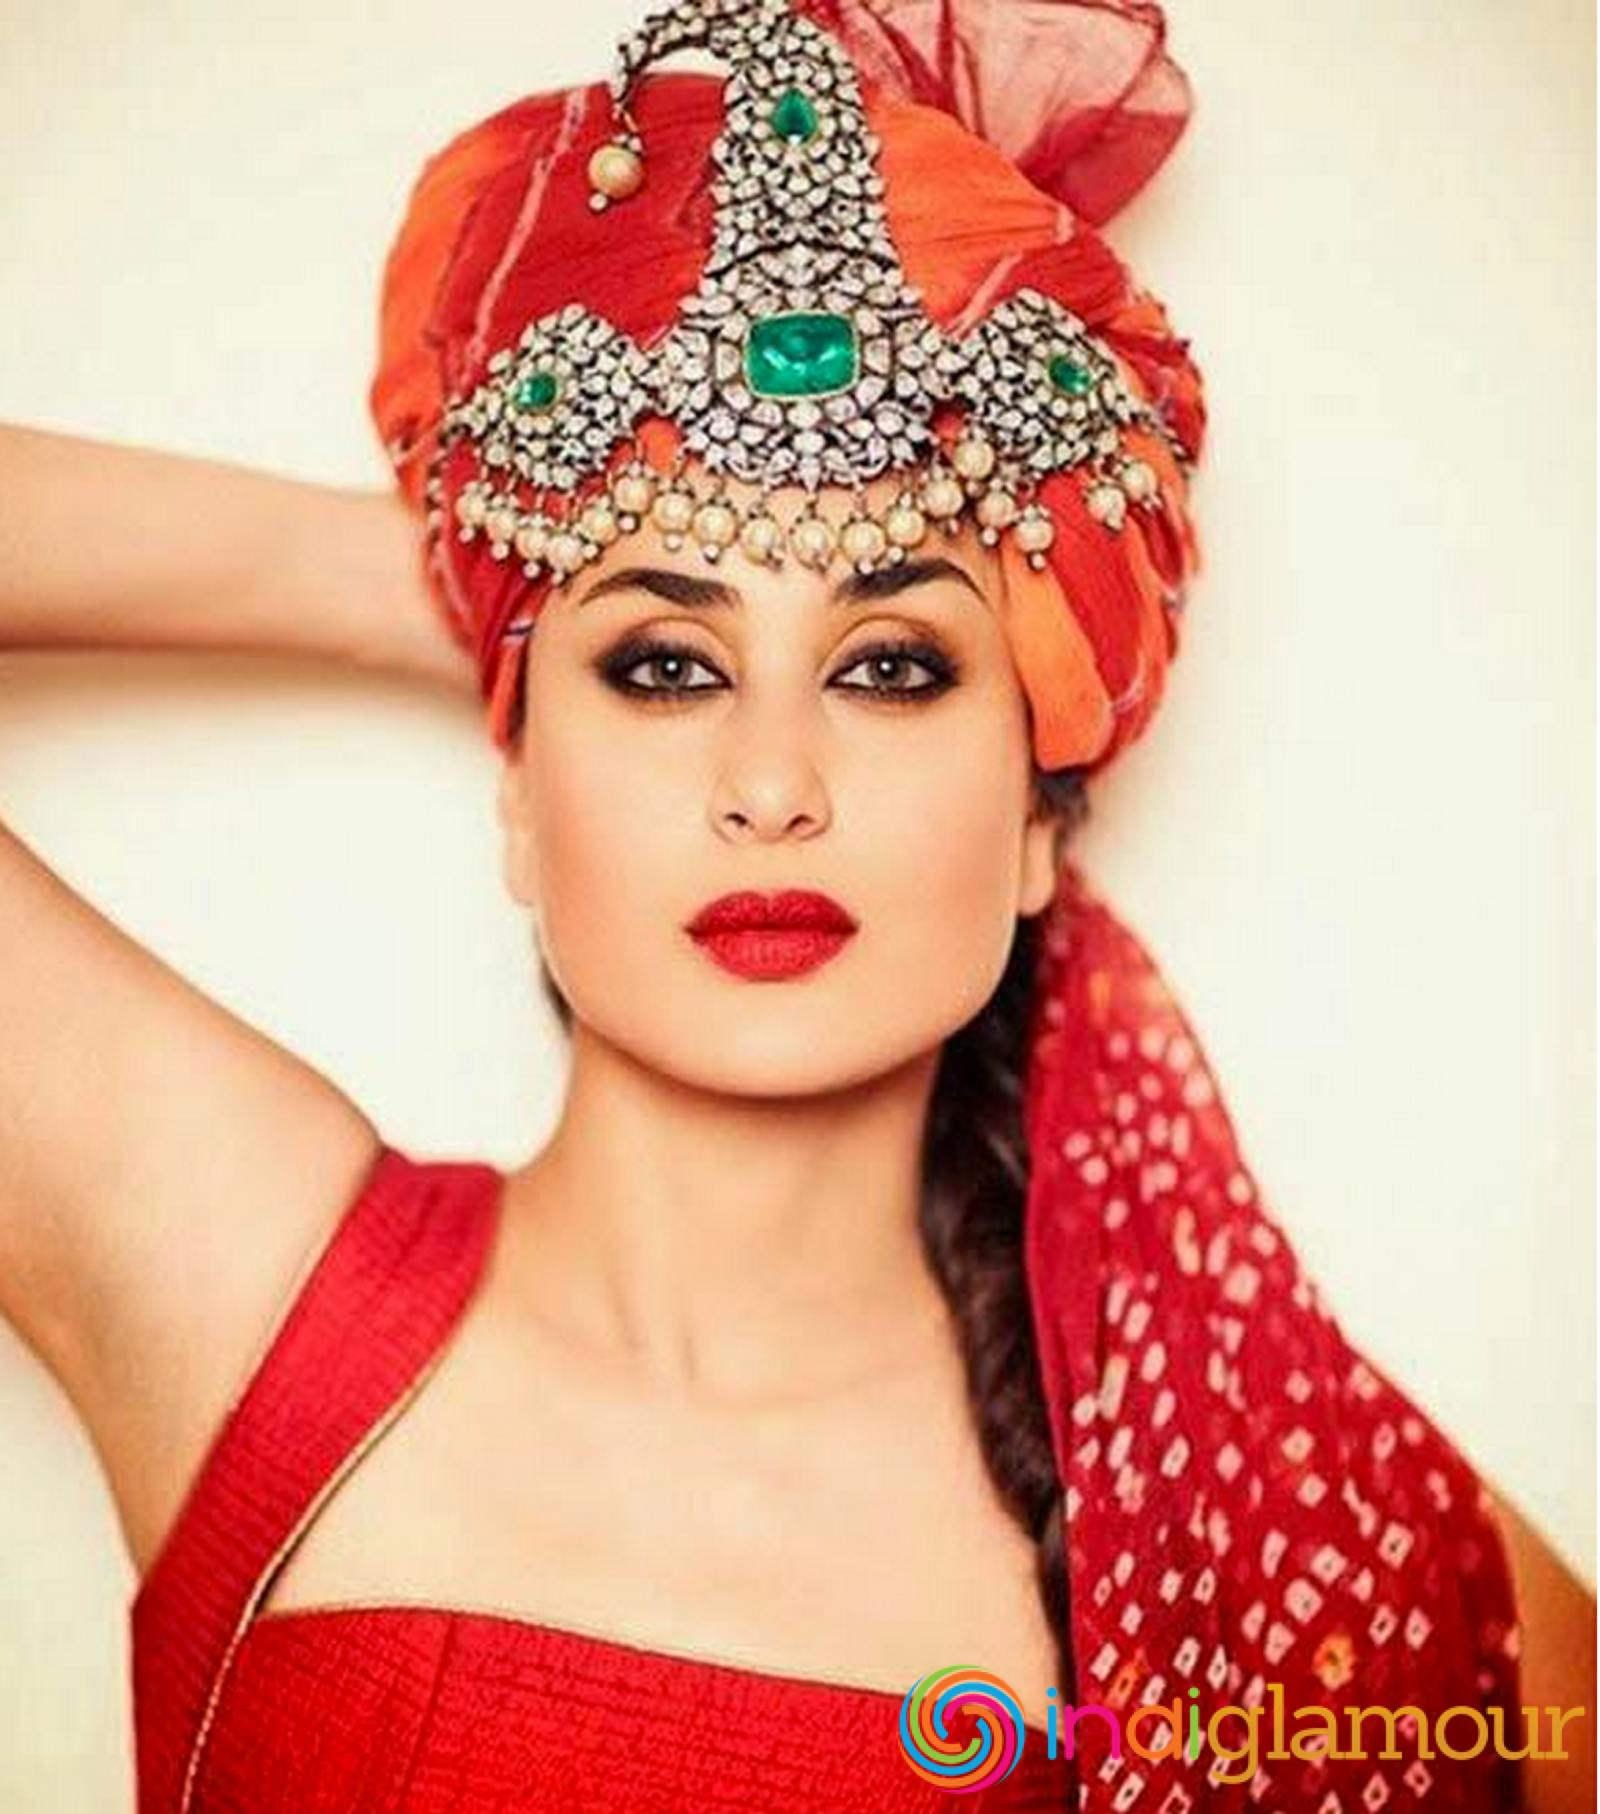 Kareena Kapoor Wearing Turban